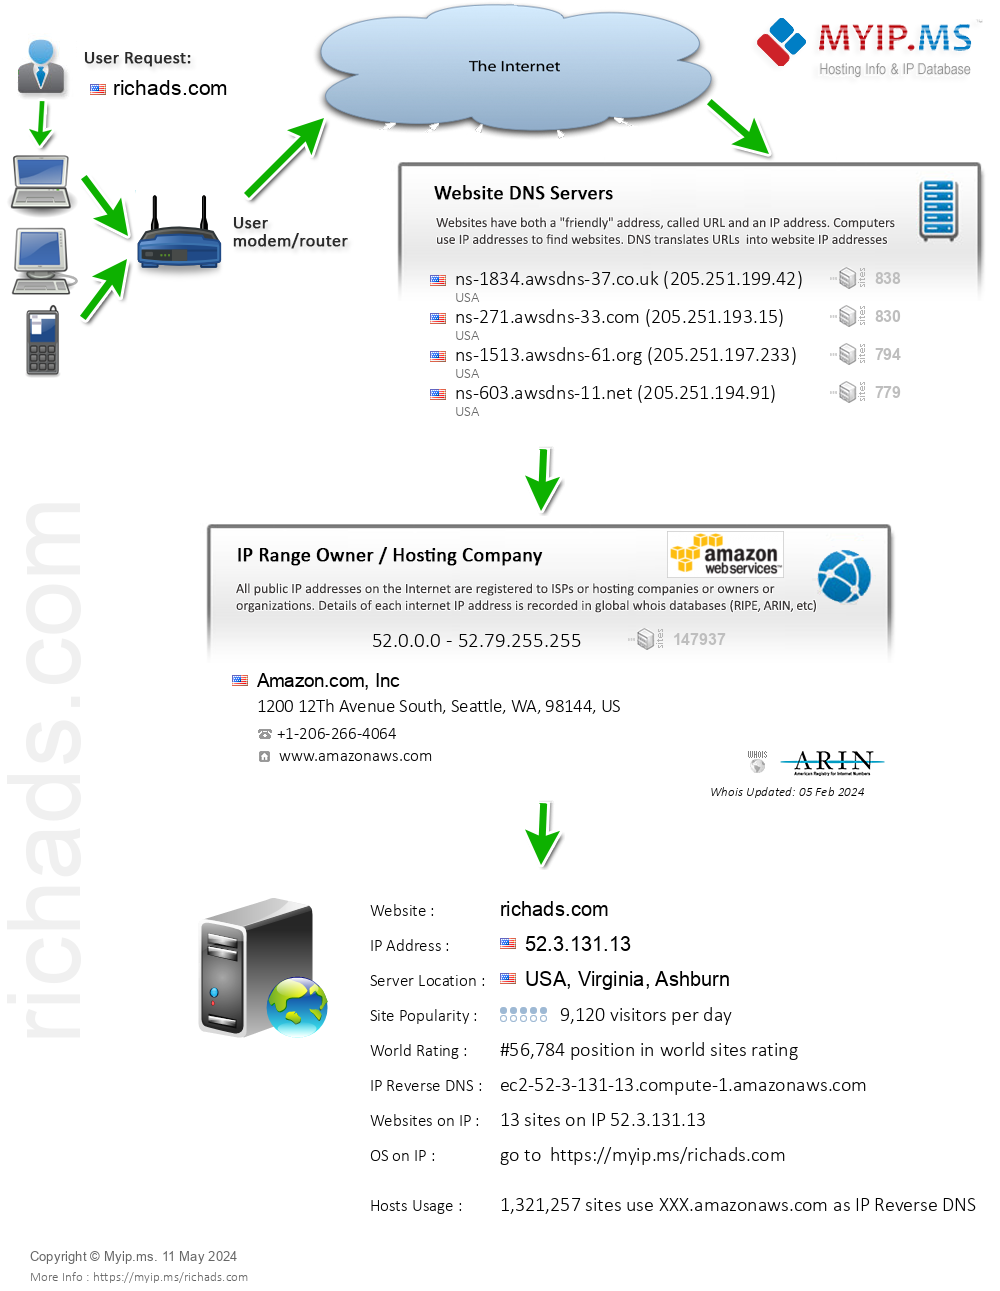 Richads.com - Website Hosting Visual IP Diagram